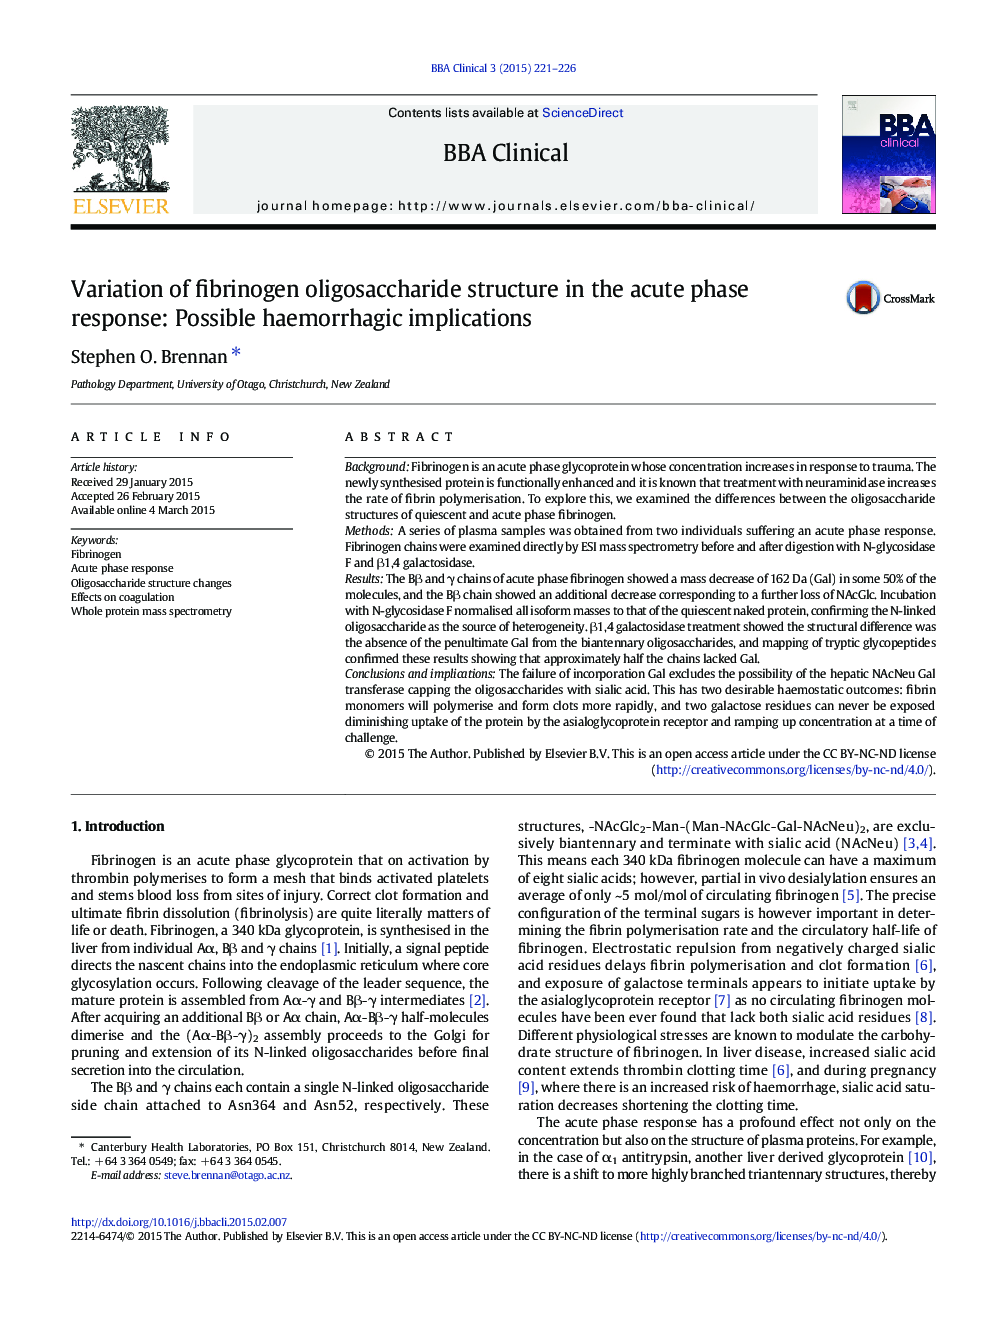 تغییر ساختار الیگوساکارید فیبرینوژن در پاسخ فاز حاد: پیامدهای احتمالی هموراژیک 